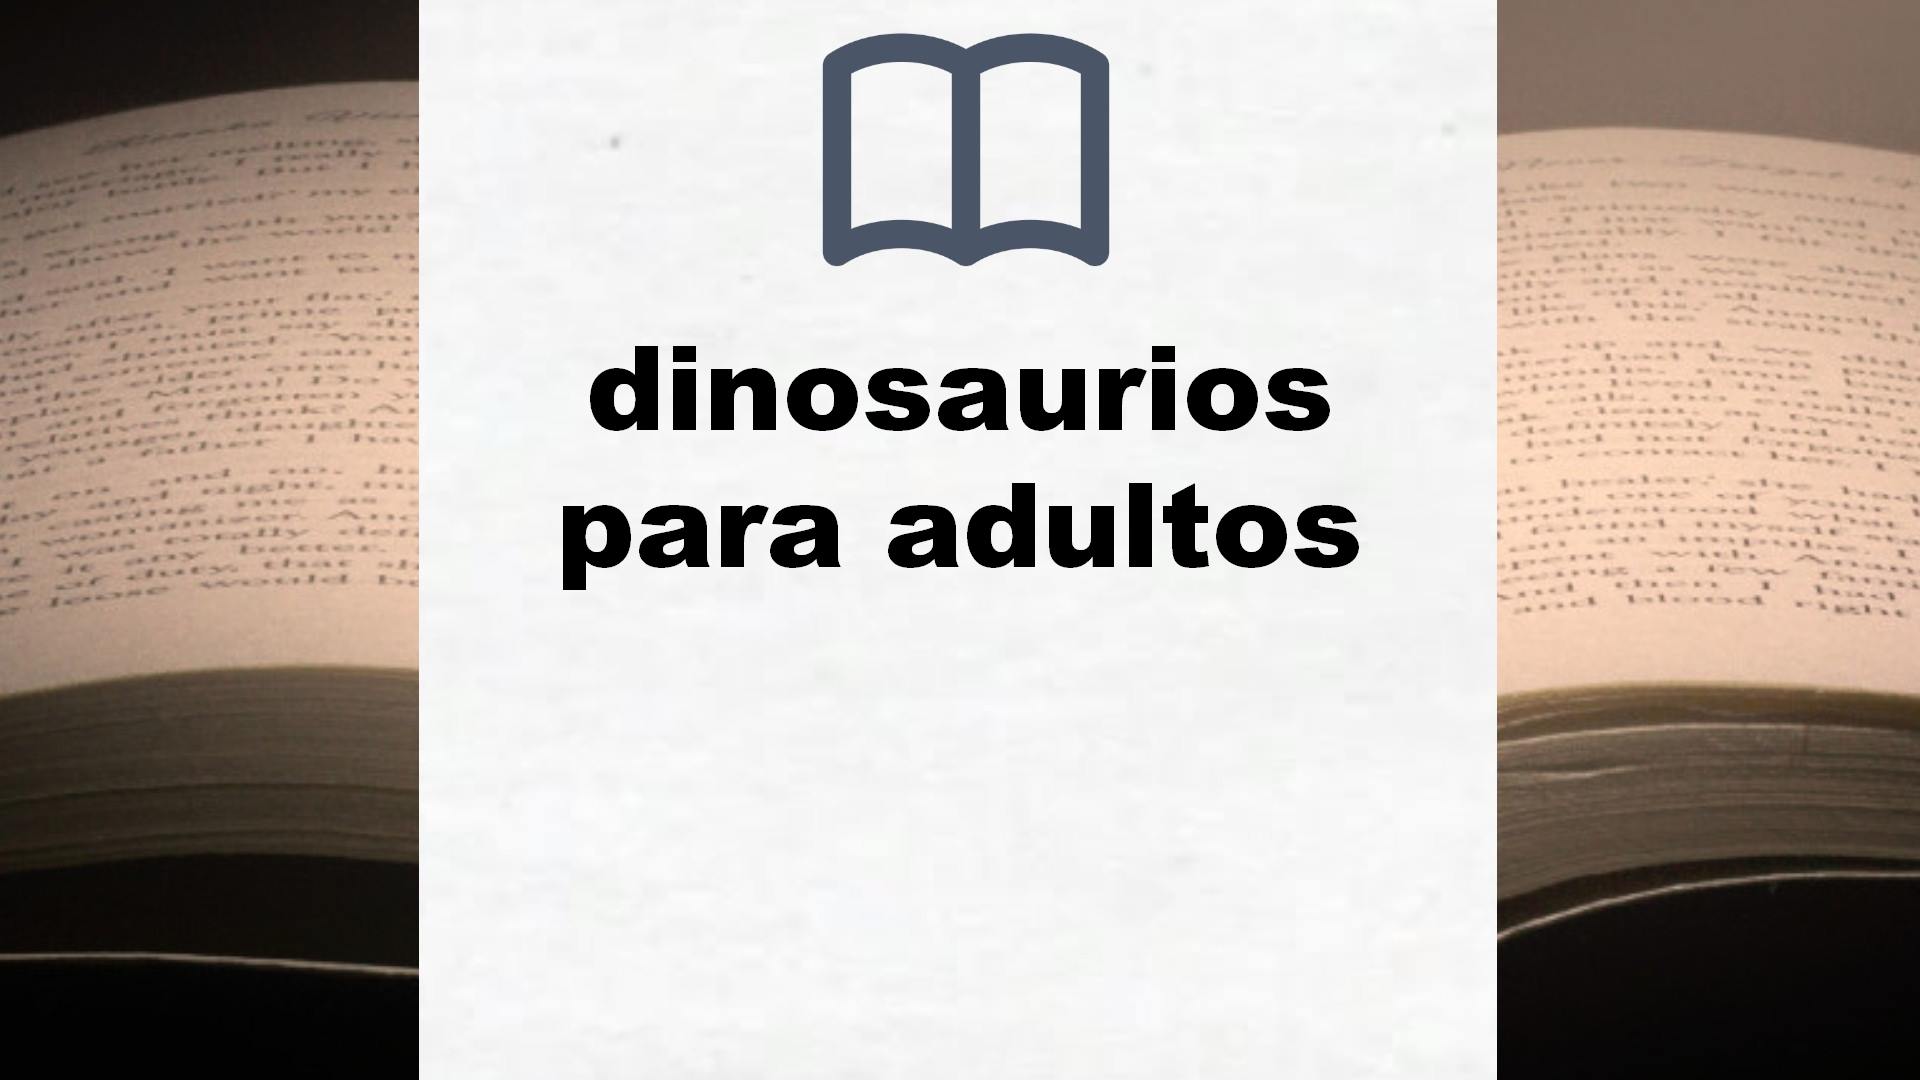 Libros sobre dinosaurios para adultos